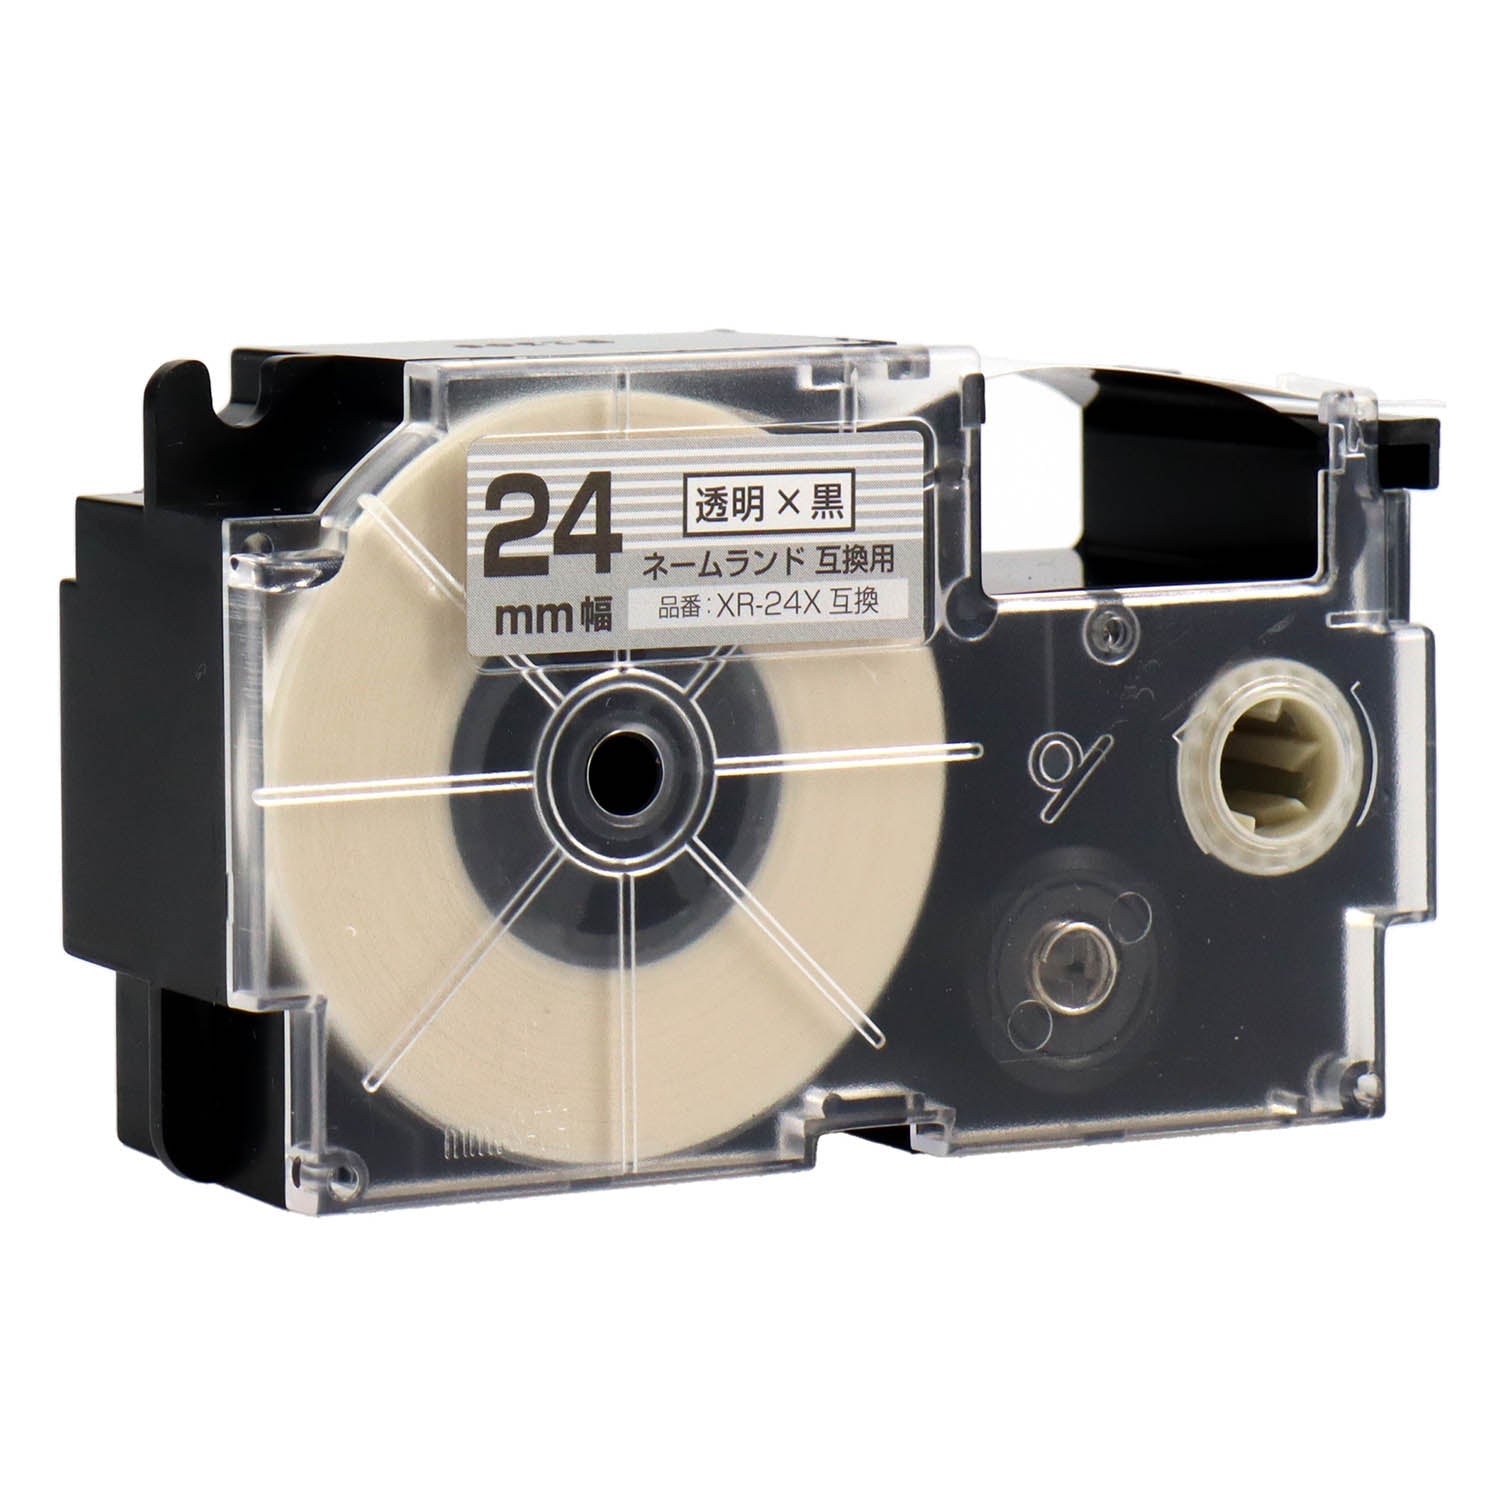 ネームランド用互換テープカートリッジ 透明×黒文字 24mm